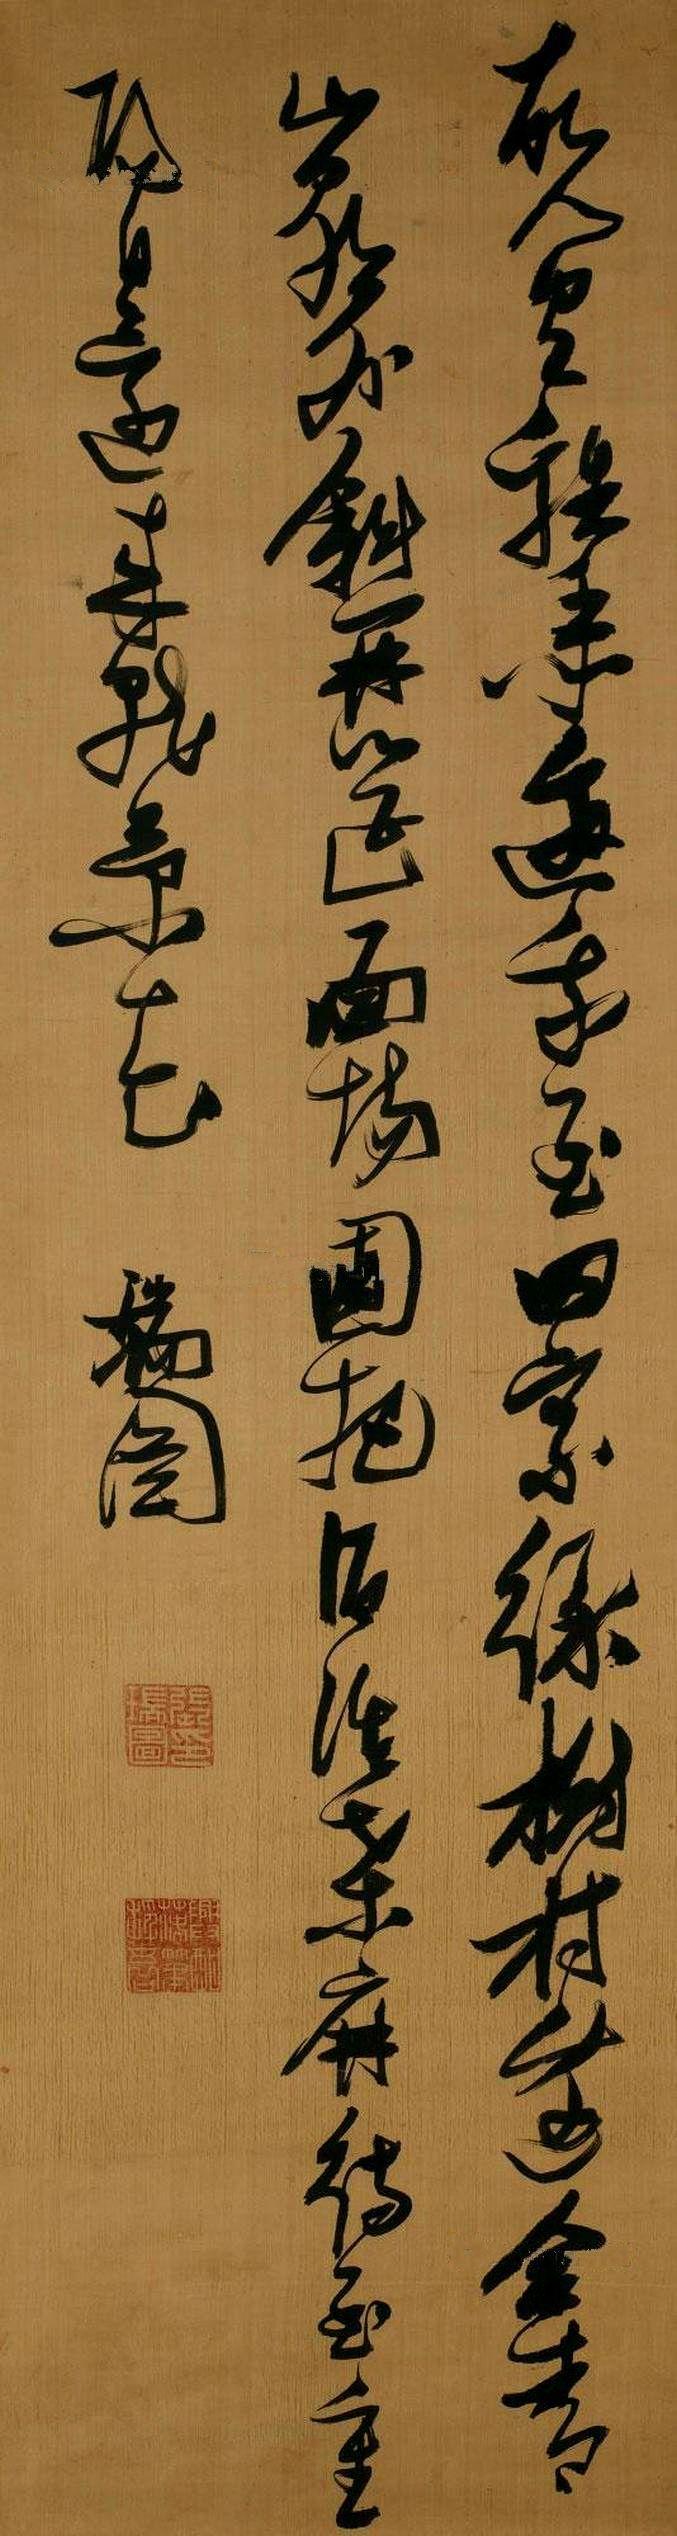 张瑞图 草书孟浩然《过故人庄》诗张瑞图是晚明时期最有创造性的书法